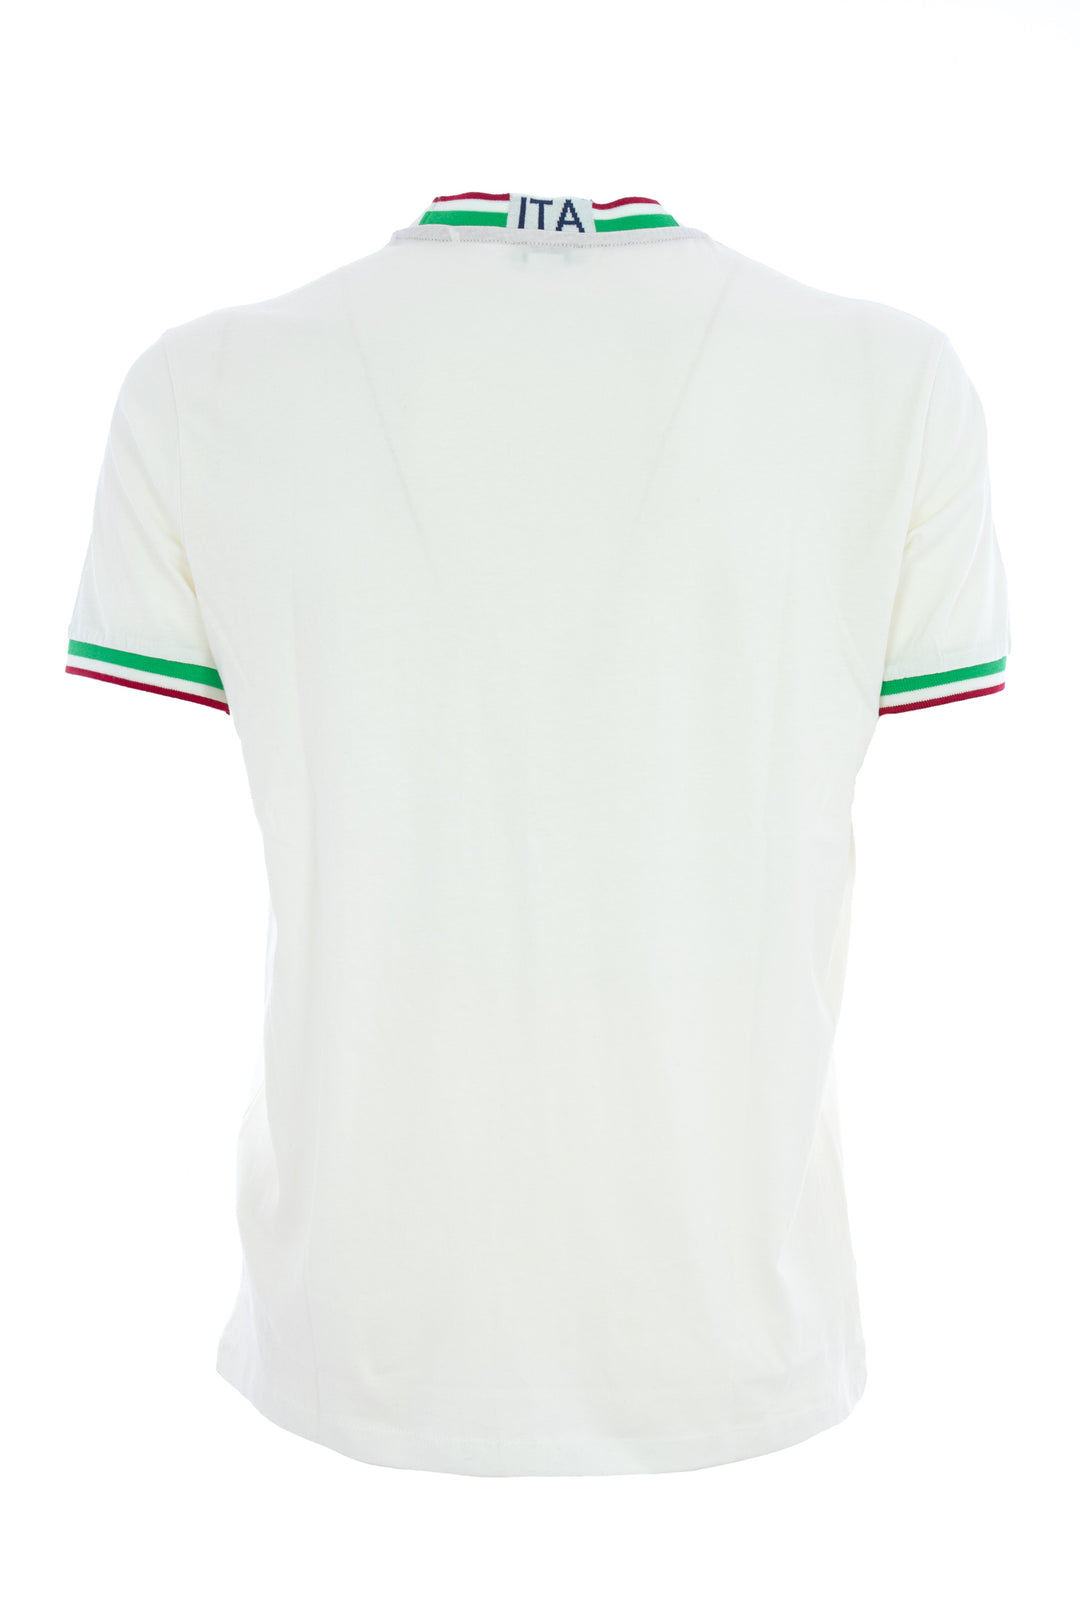 U.S. POLO ASSN. T-shirt bianca in cotone con logo tricolore italiano ricamato - Mancinelli 1954